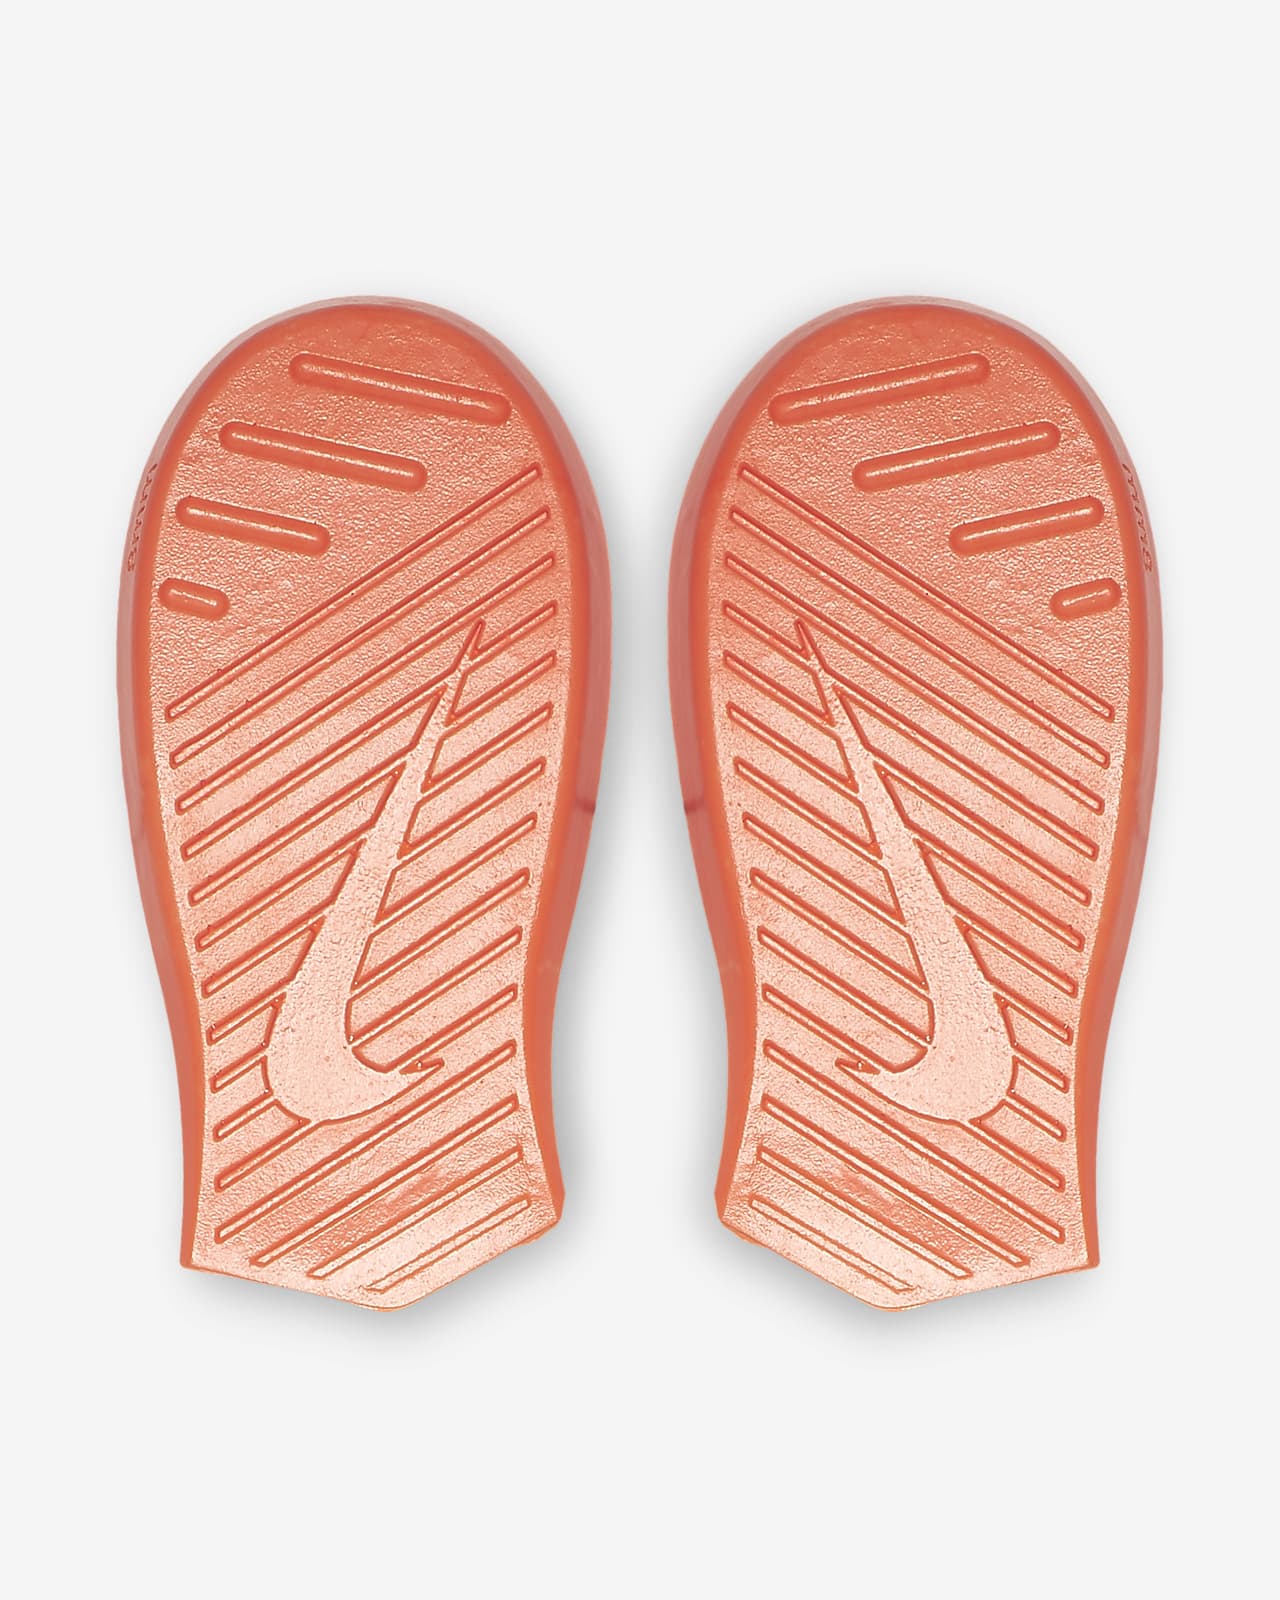 Nike Metcon 5, las zapatillas de CrossFit favoritas de Mat Fraser, el  hombre más fuerte del planeta